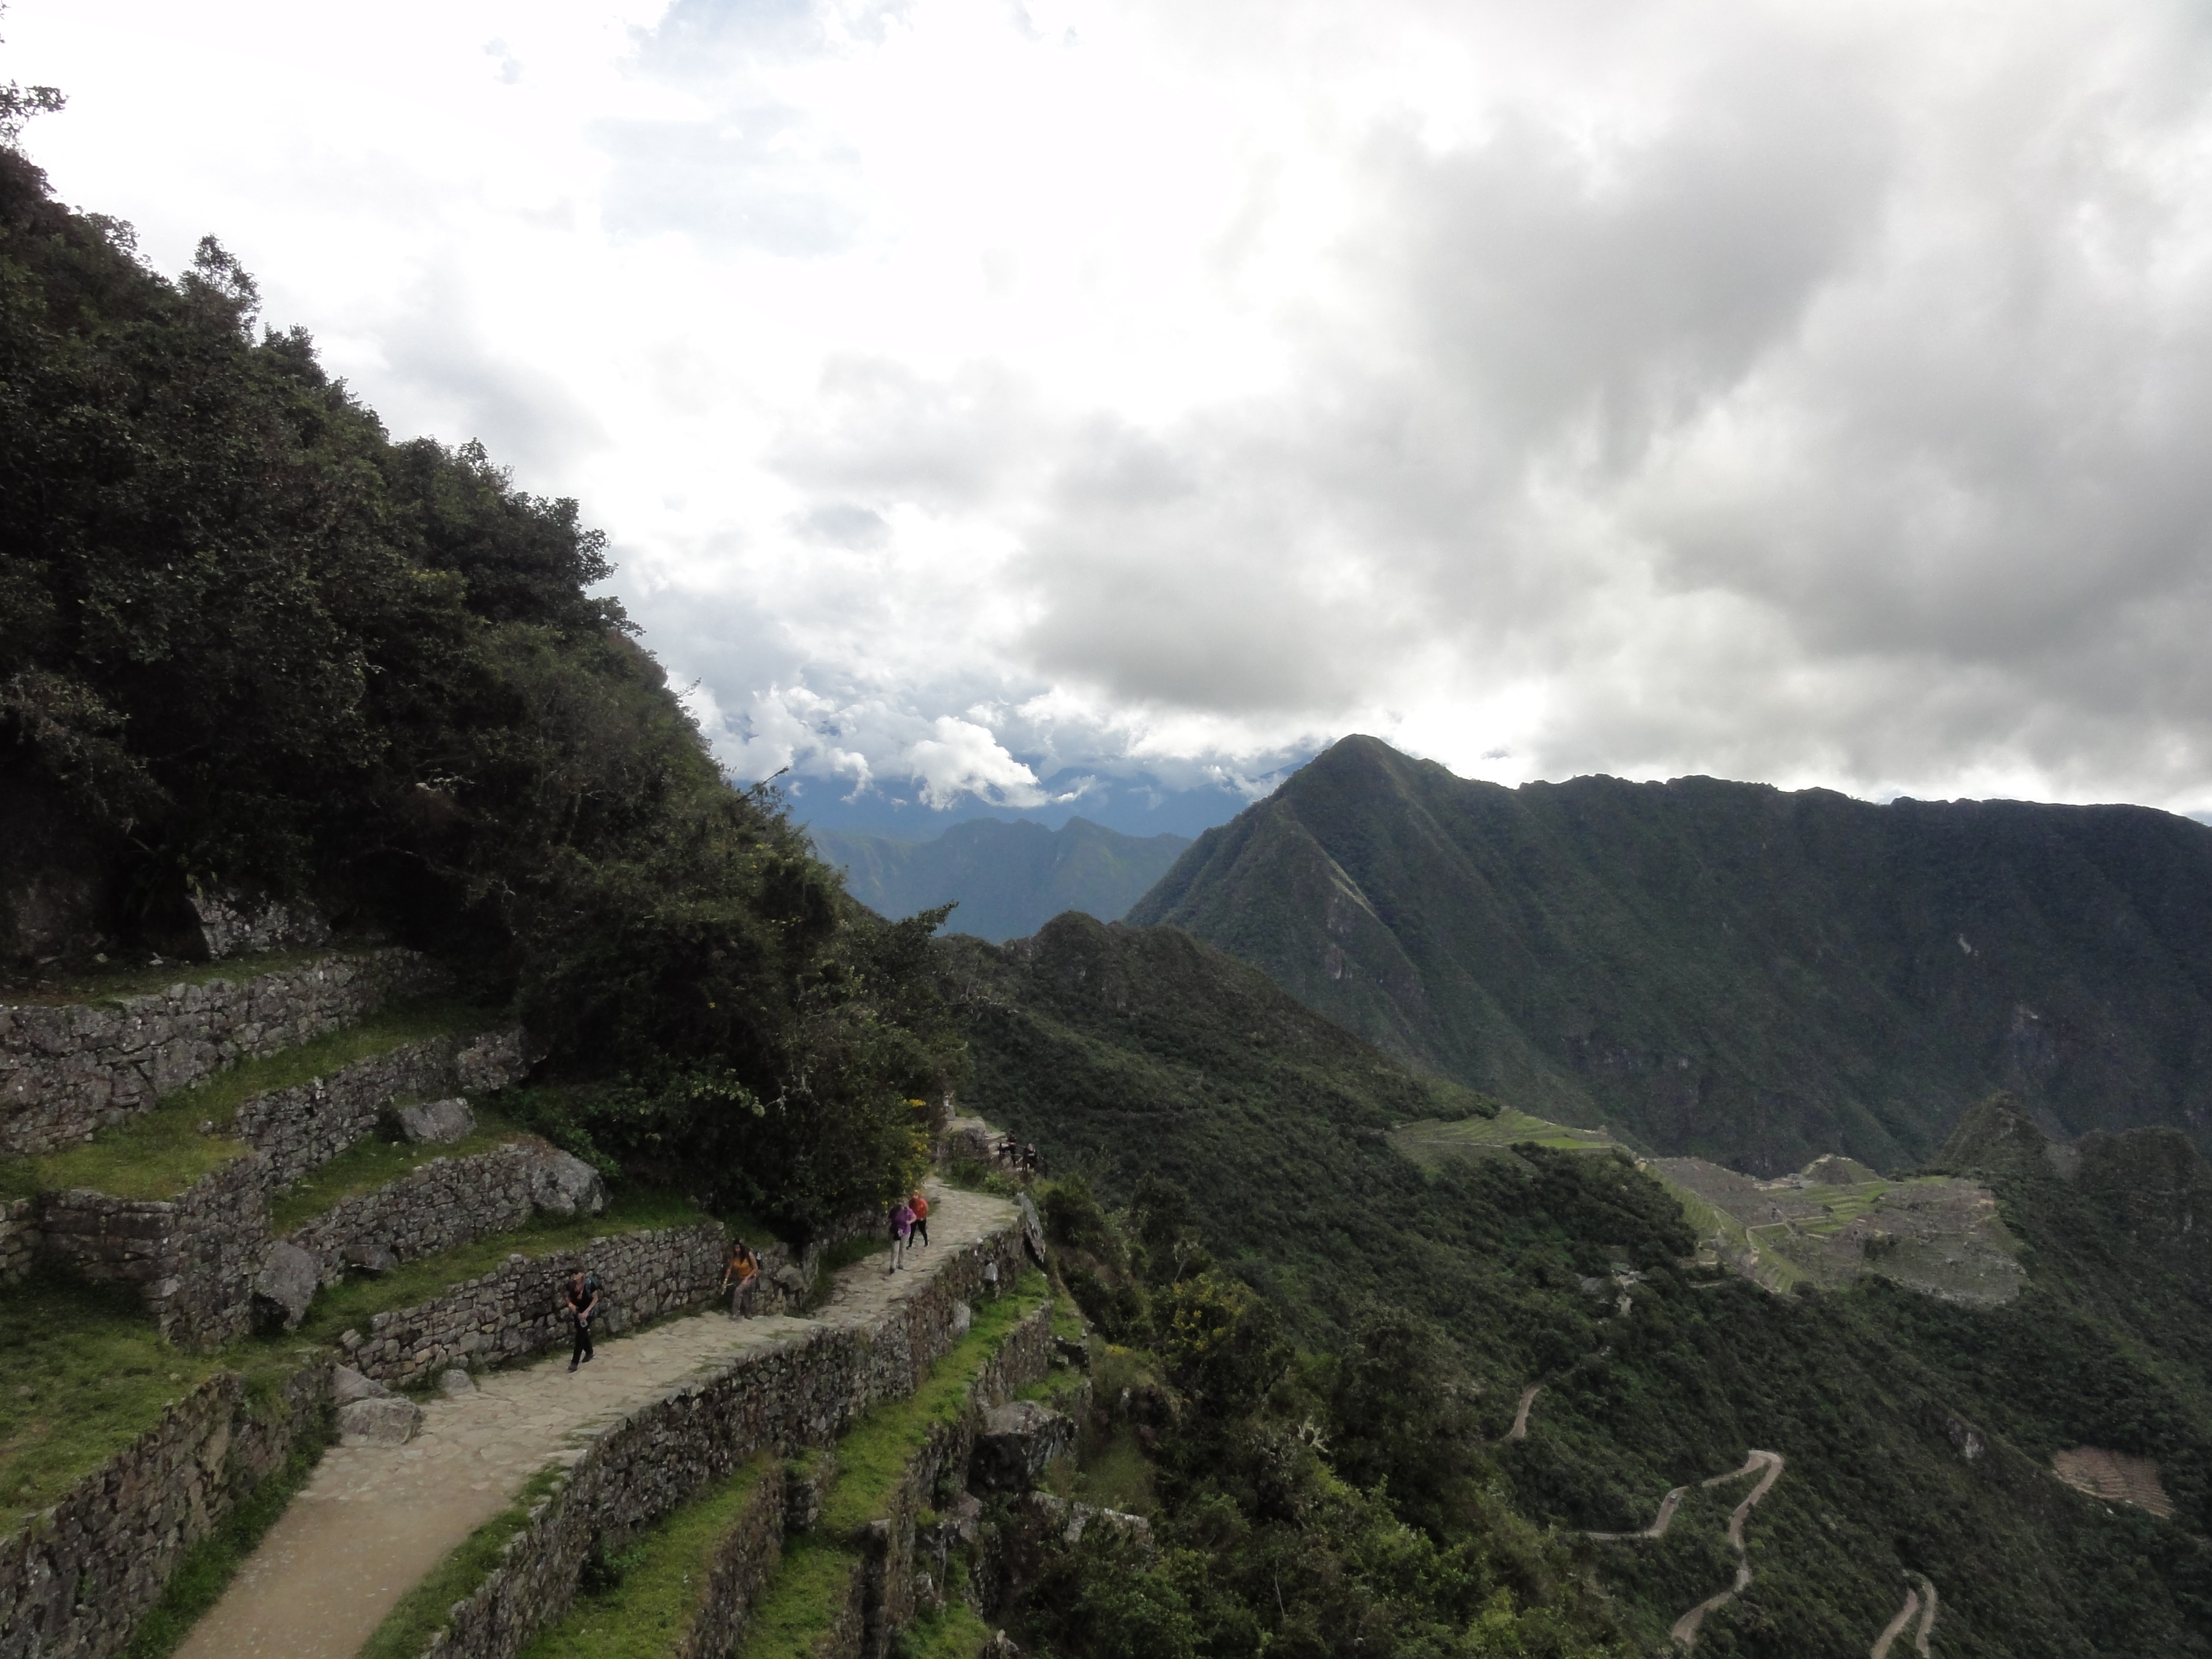 Machu Picchu, late afternoon in Peru